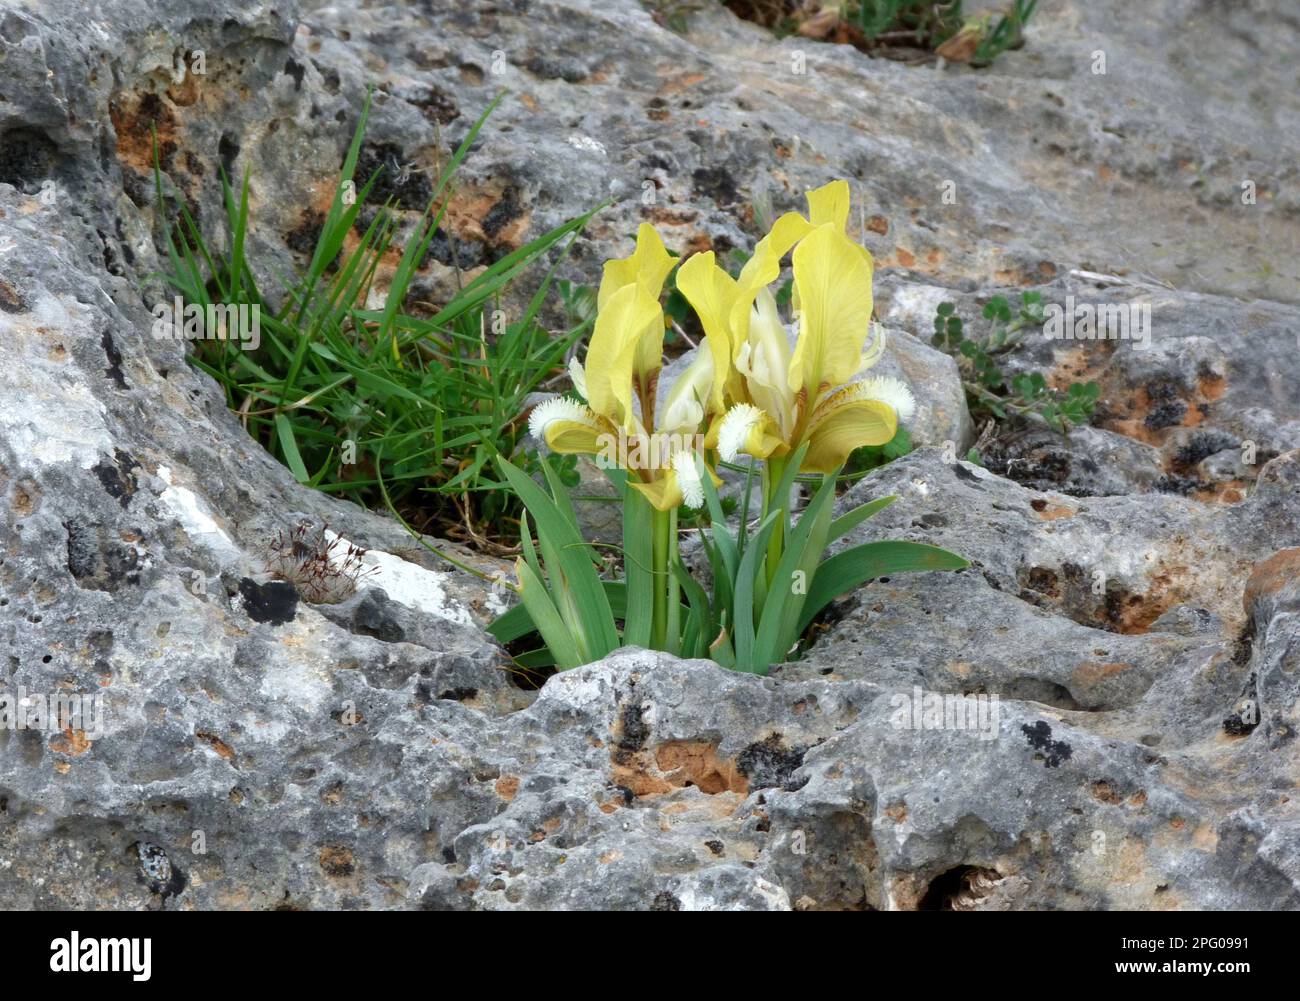 Südliche Zwergiris (Iris pseudopumila), gelbe Form, blühend, wächst in Kalksteinspalten, Südgriechenland Stockfoto